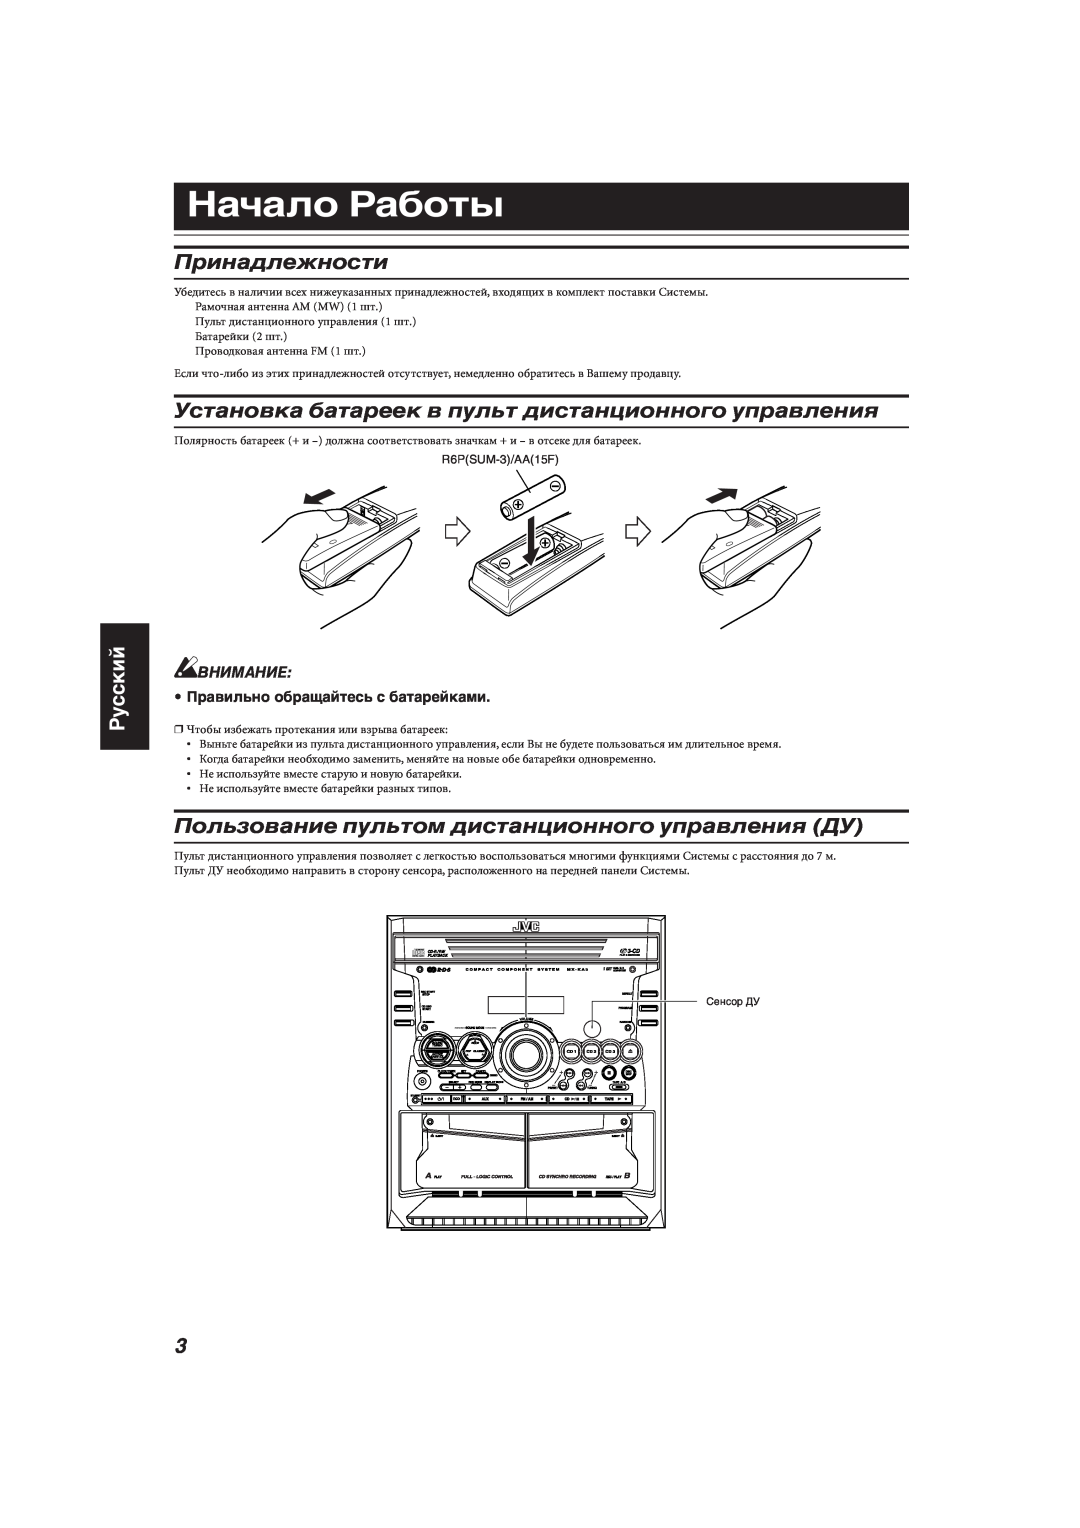 JVC MX-KA33 manual Начало Работы, Принадлежности, Пользование пультом дистанционного управления ДУ, Русский, Внимание 